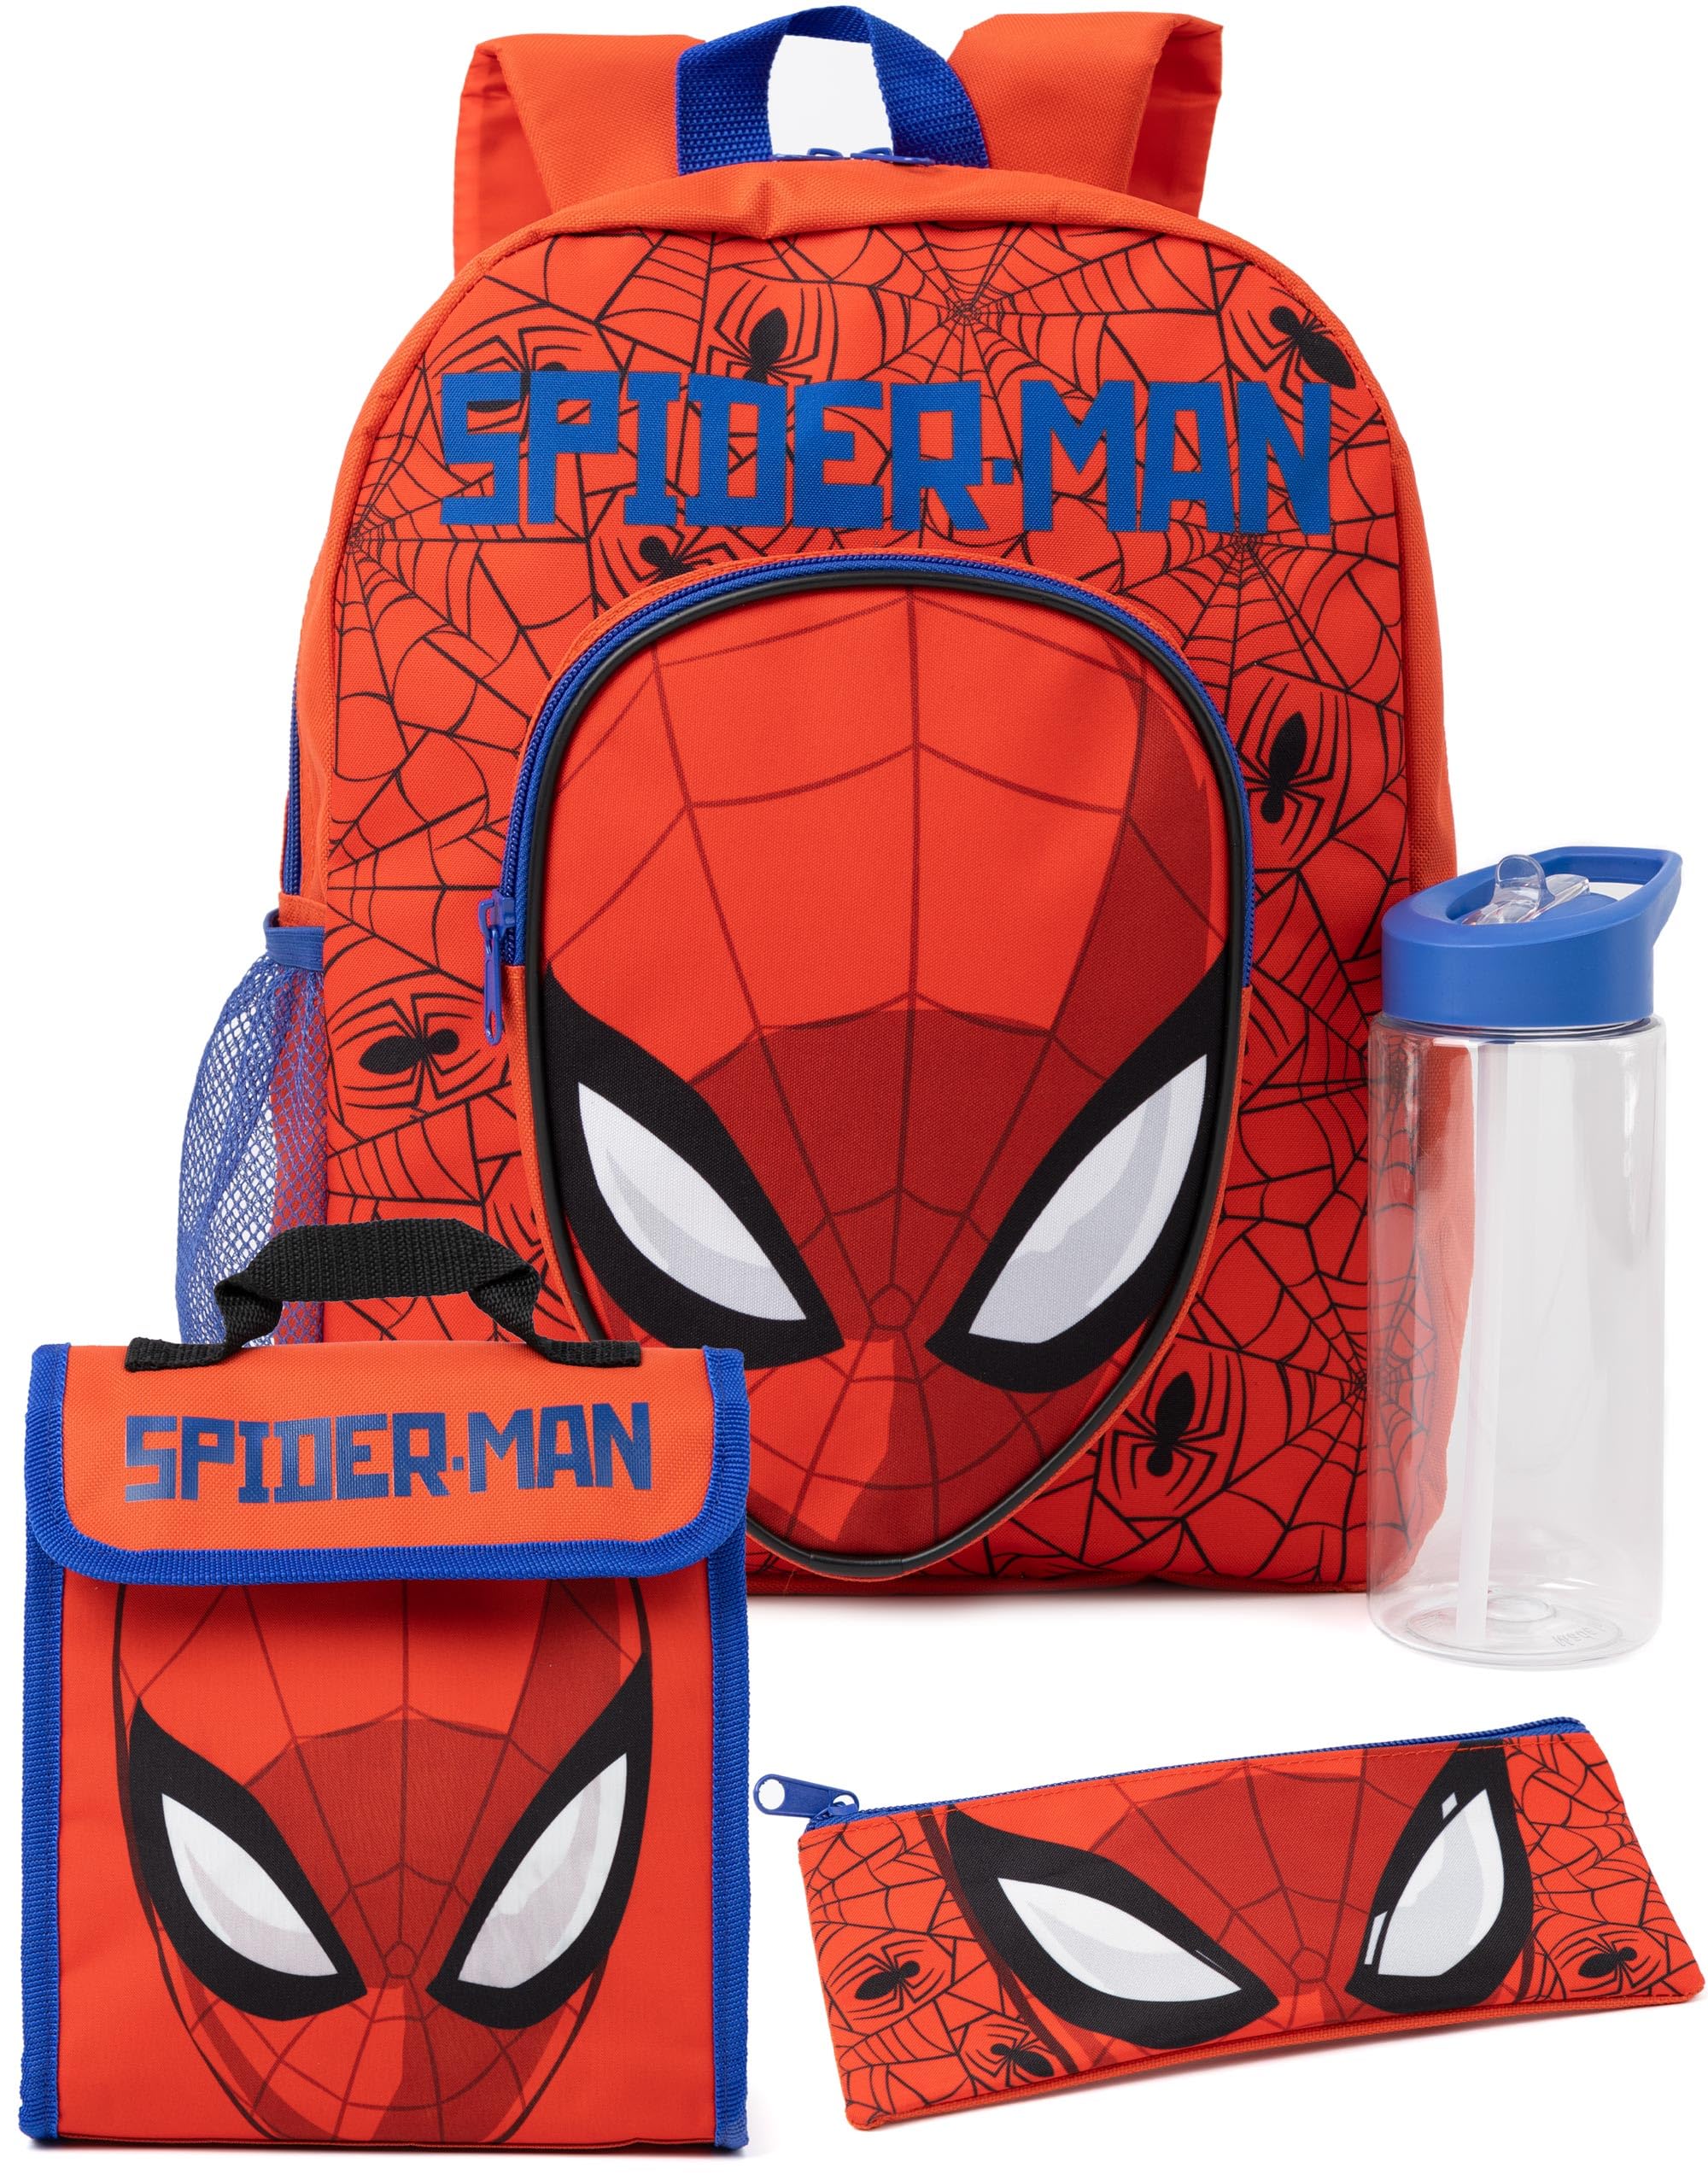 Marvel Spider-Man 4 Piece Backpack Set Kids | Boys Girls Superhero Spider Web Red Rucksack Lunch Bag Pencil Case Water Bottle